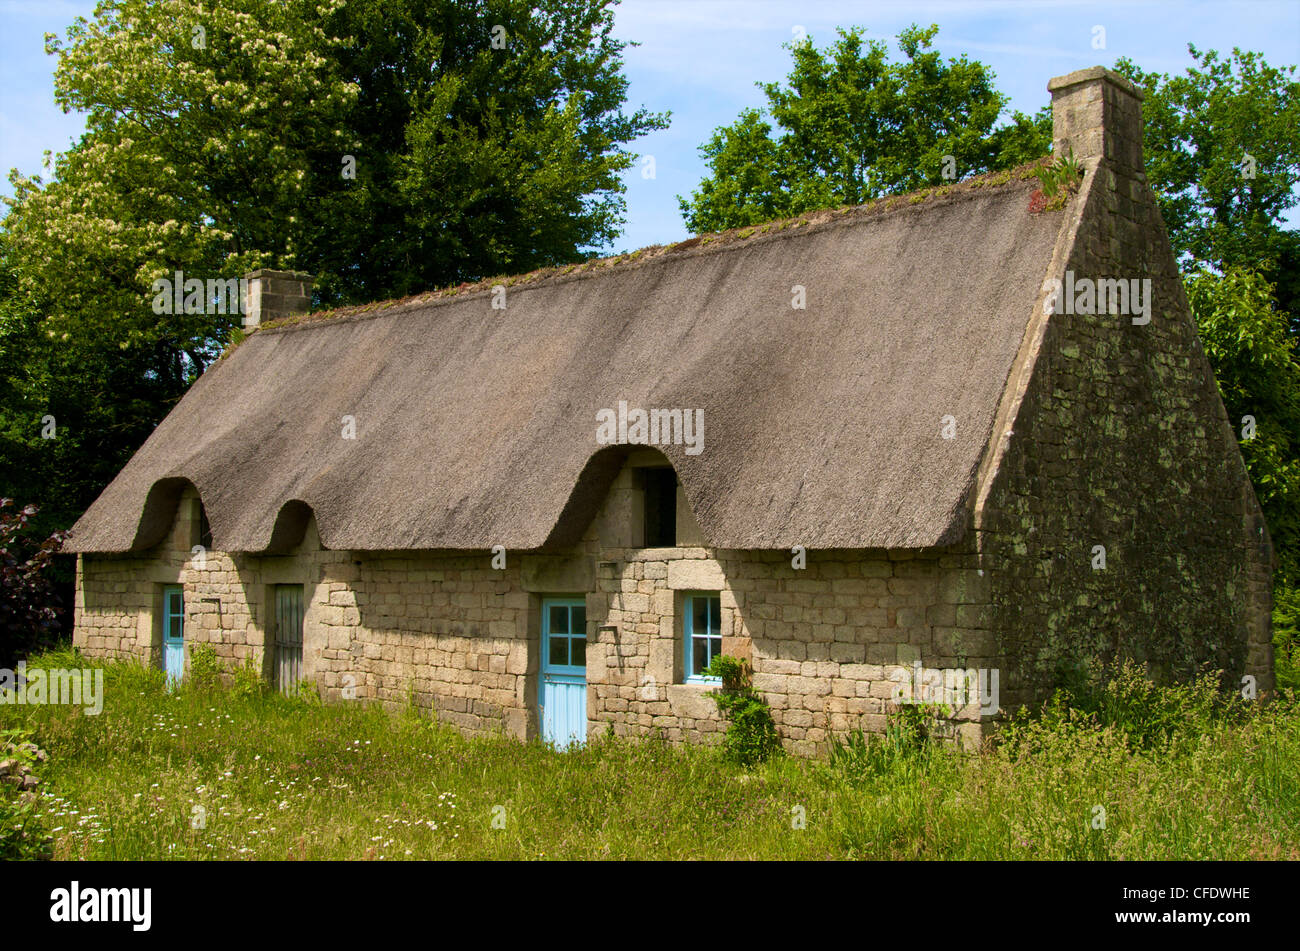 Ancienne maison de chaume typique Breton, près de Lorient, Morbihan, Bretagne, France, Europe Banque D'Images